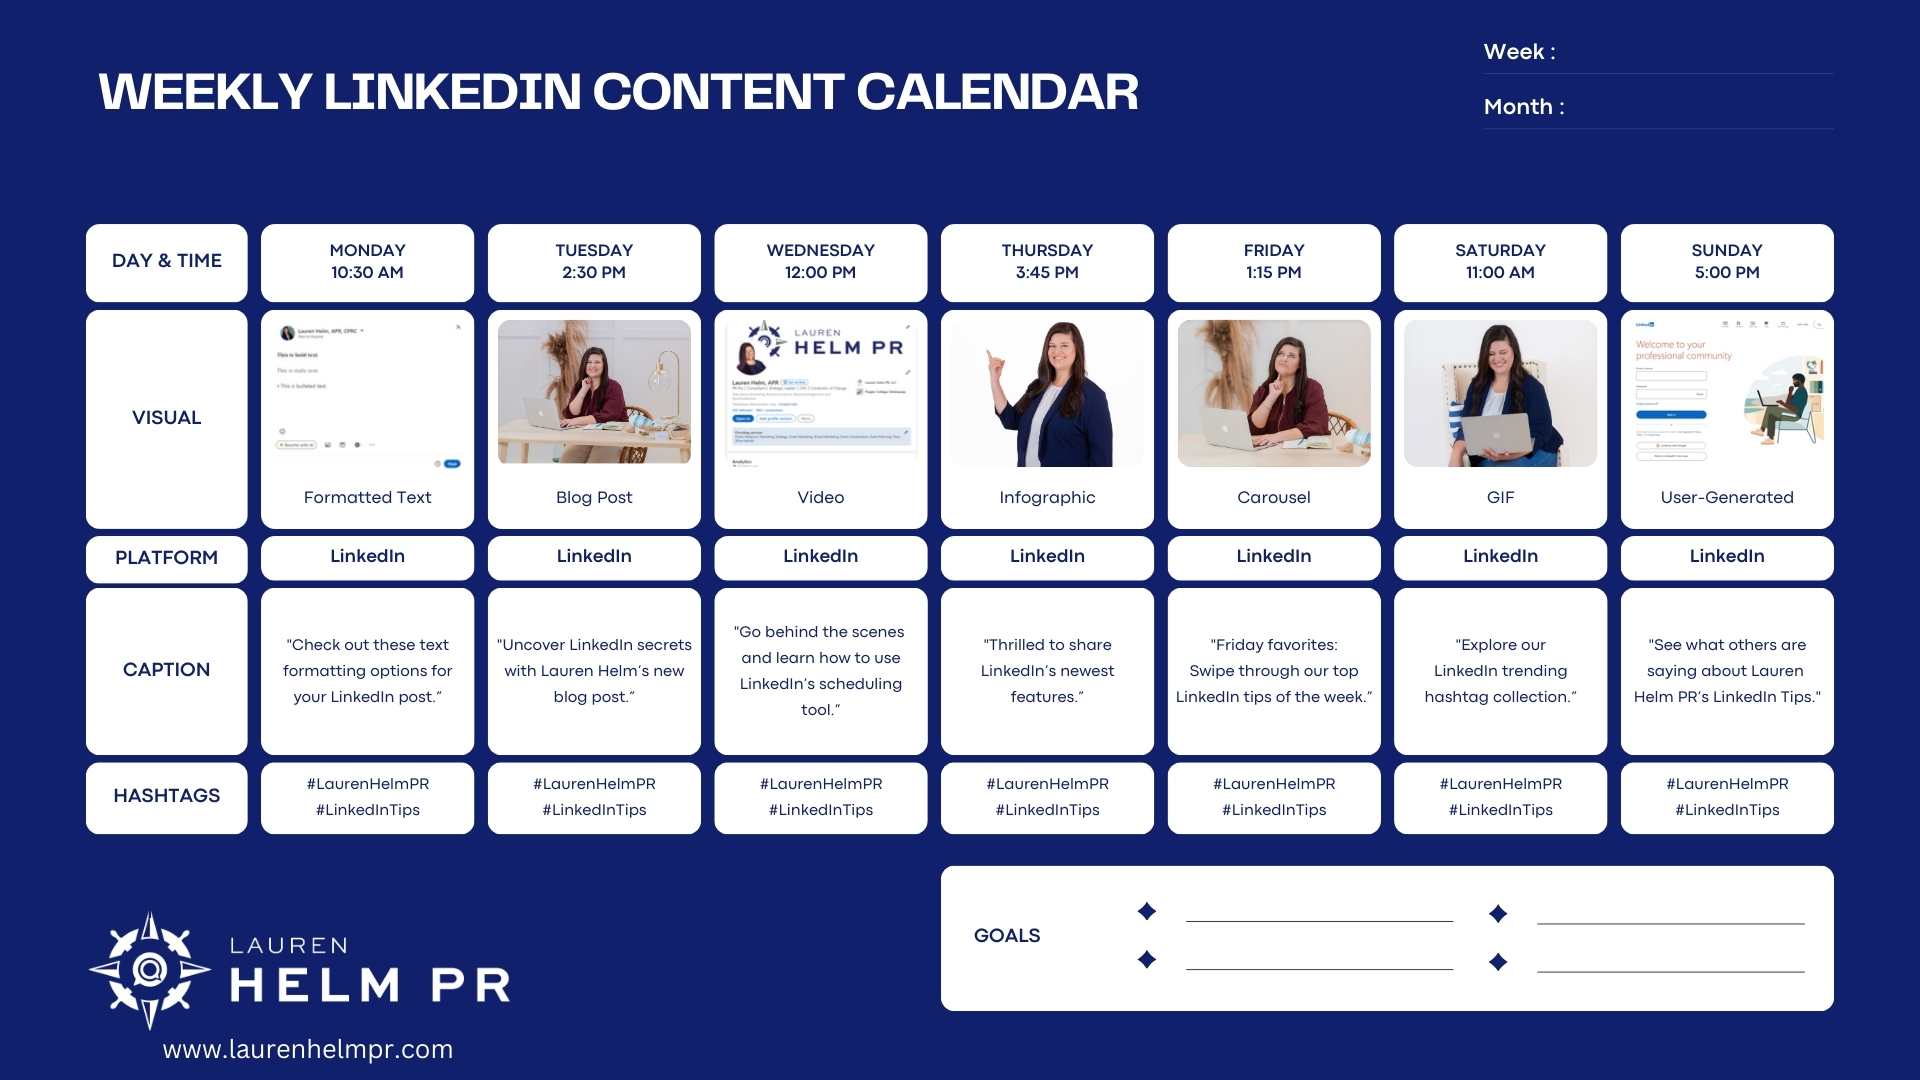 LinkedIn Weekly Content Calendar Template Design by Lauren Helm PR